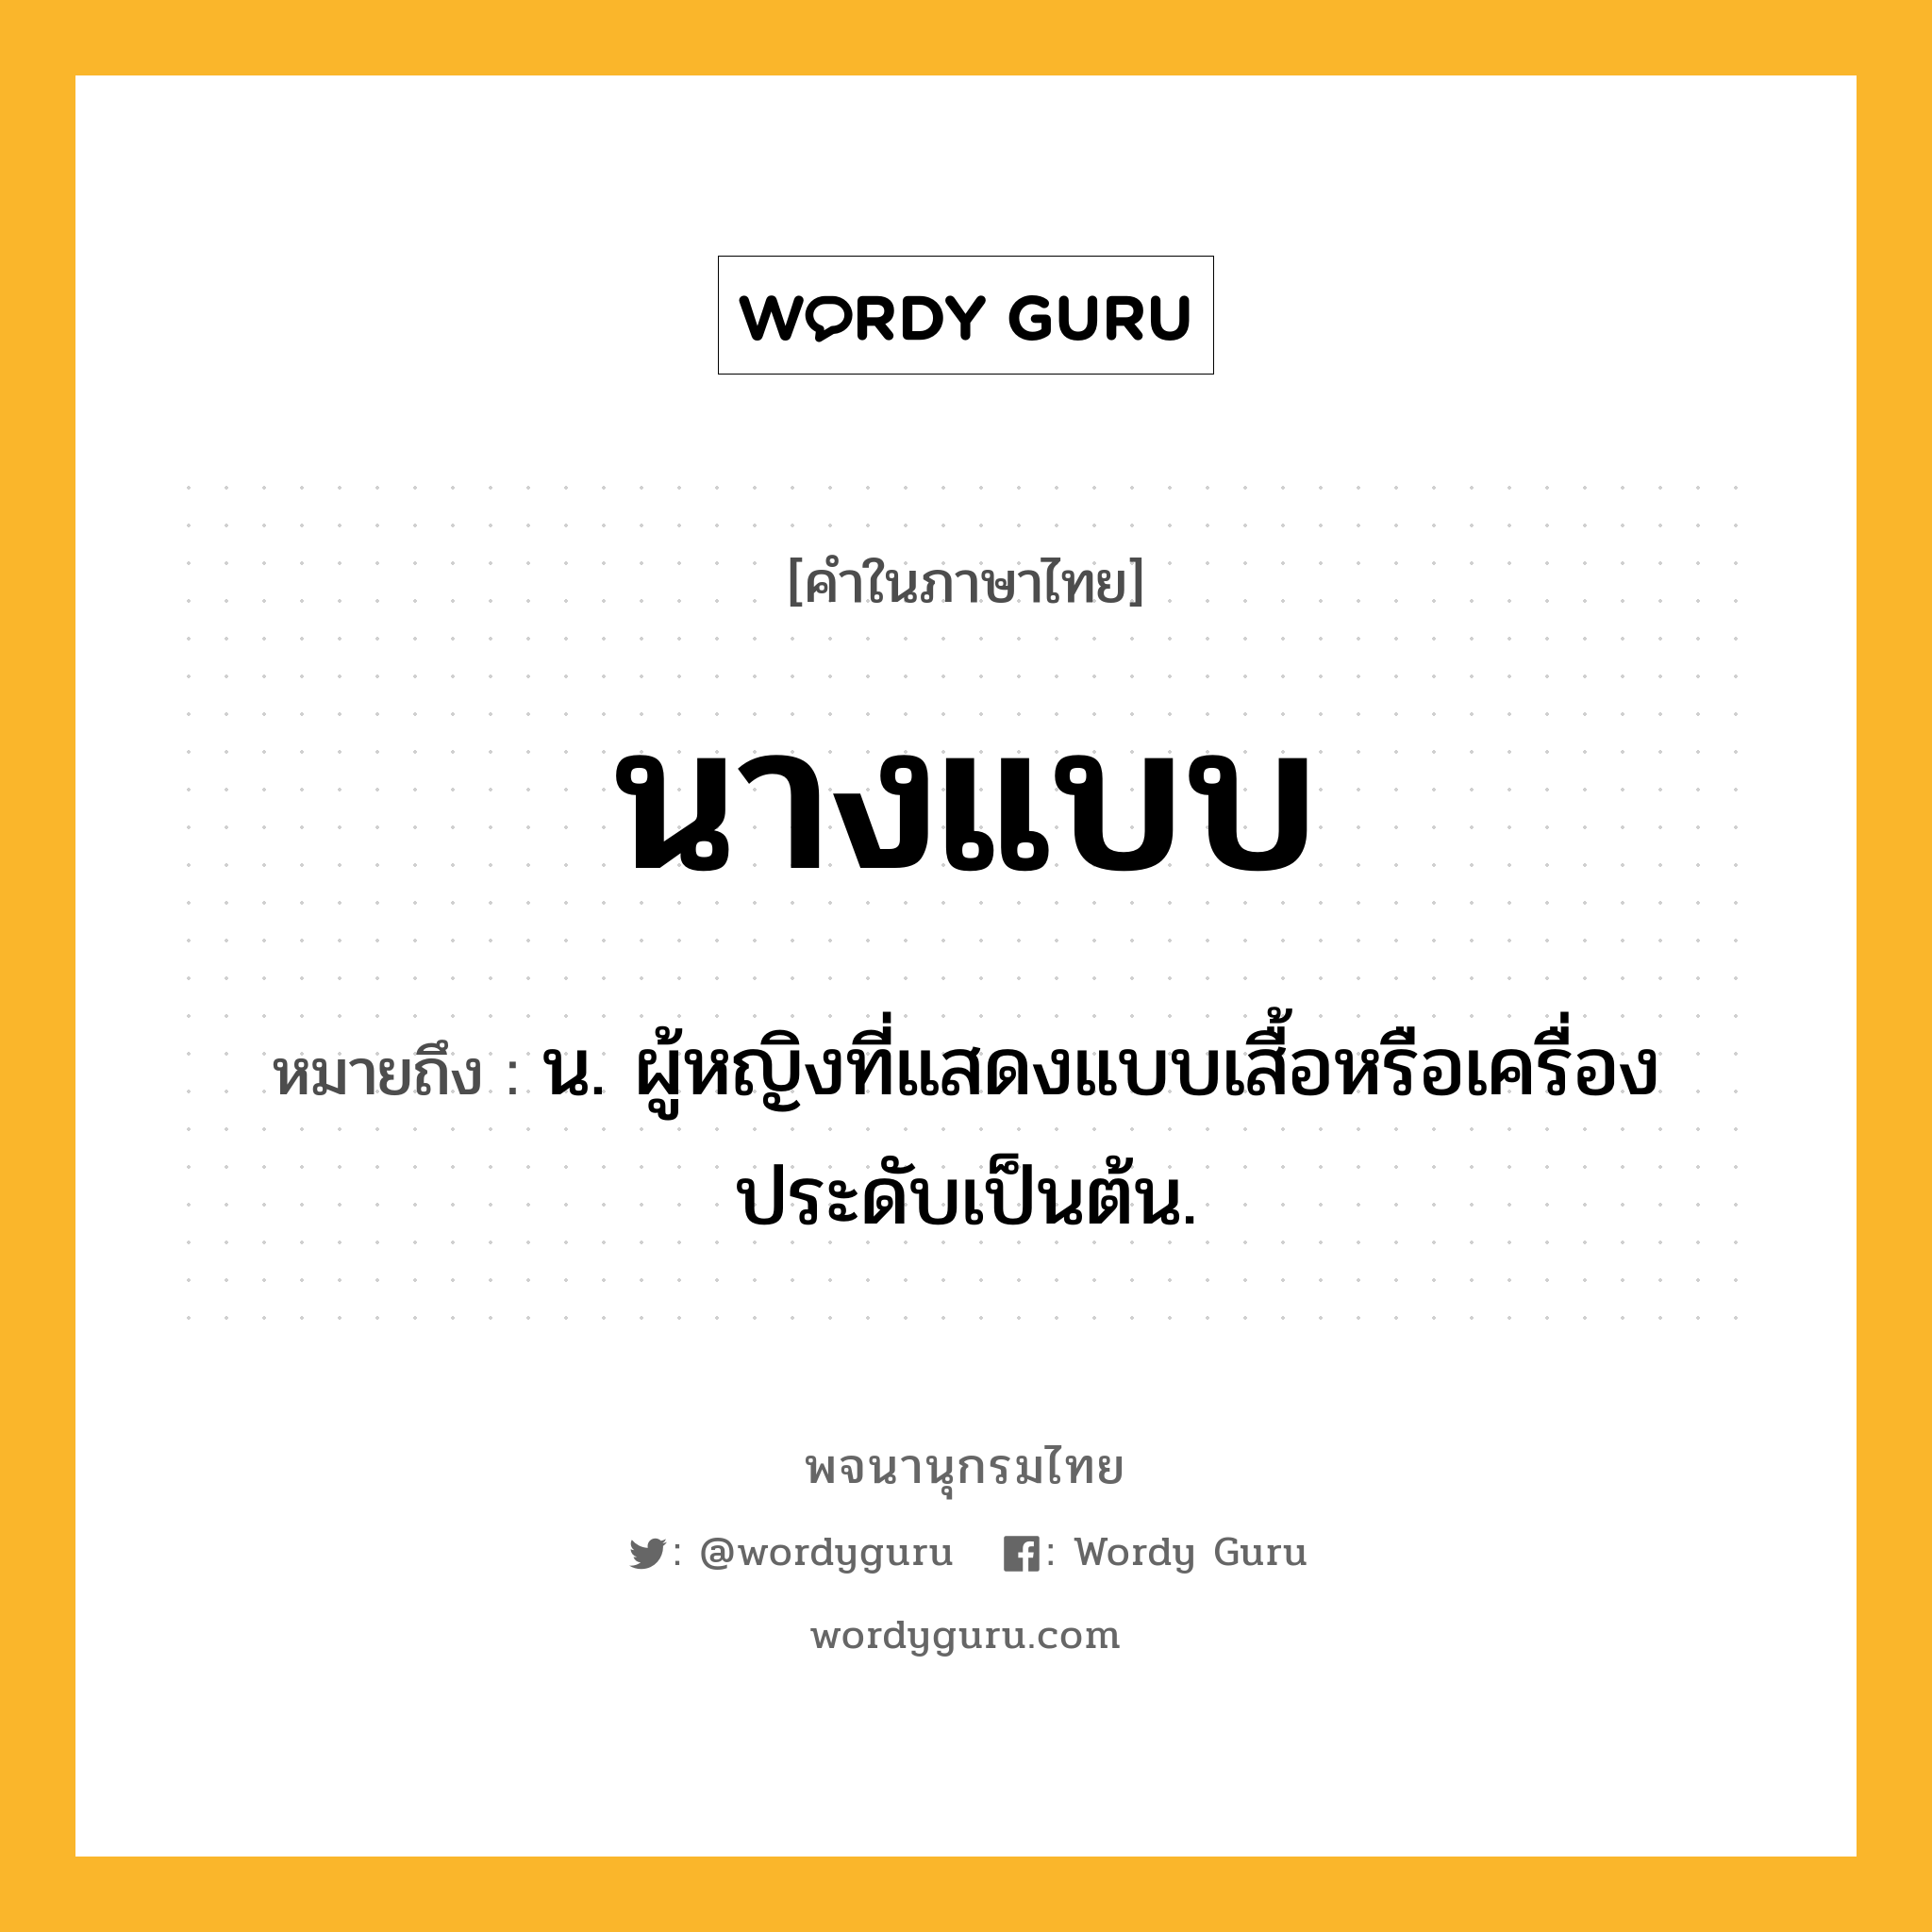 นางแบบ หมายถึงอะไร?, คำในภาษาไทย นางแบบ หมายถึง น. ผู้หญิงที่แสดงแบบเสื้อหรือเครื่องประดับเป็นต้น.